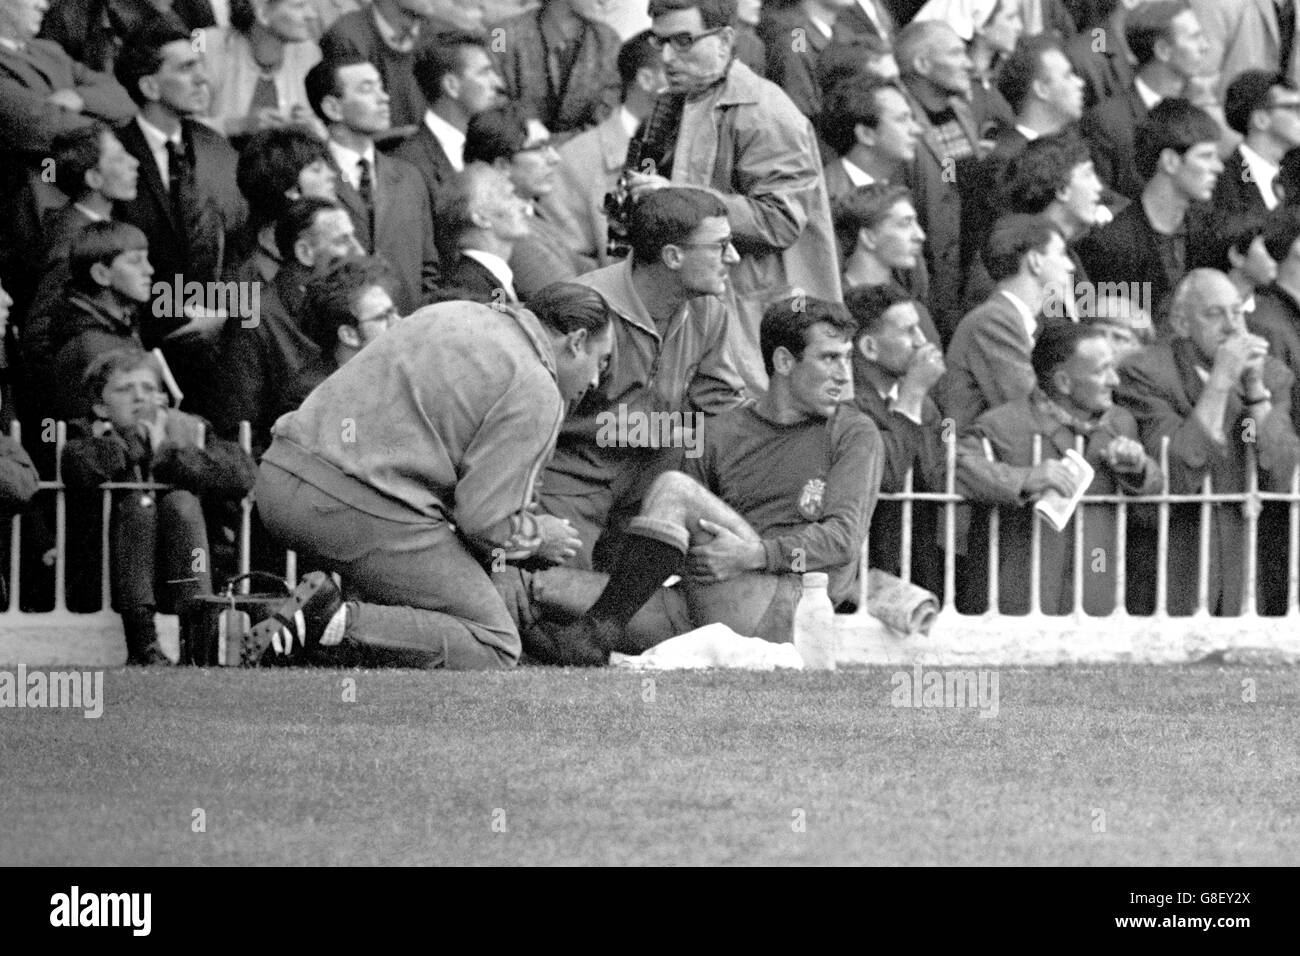 Calcio - Coppa del mondo Inghilterra 1966 - Gruppo due - Germania Ovest / Spagna - Villa Park. Abelardo, in Spagna, guarda indietro al colpevole mentre riceve il trattamento per una ferita Foto Stock